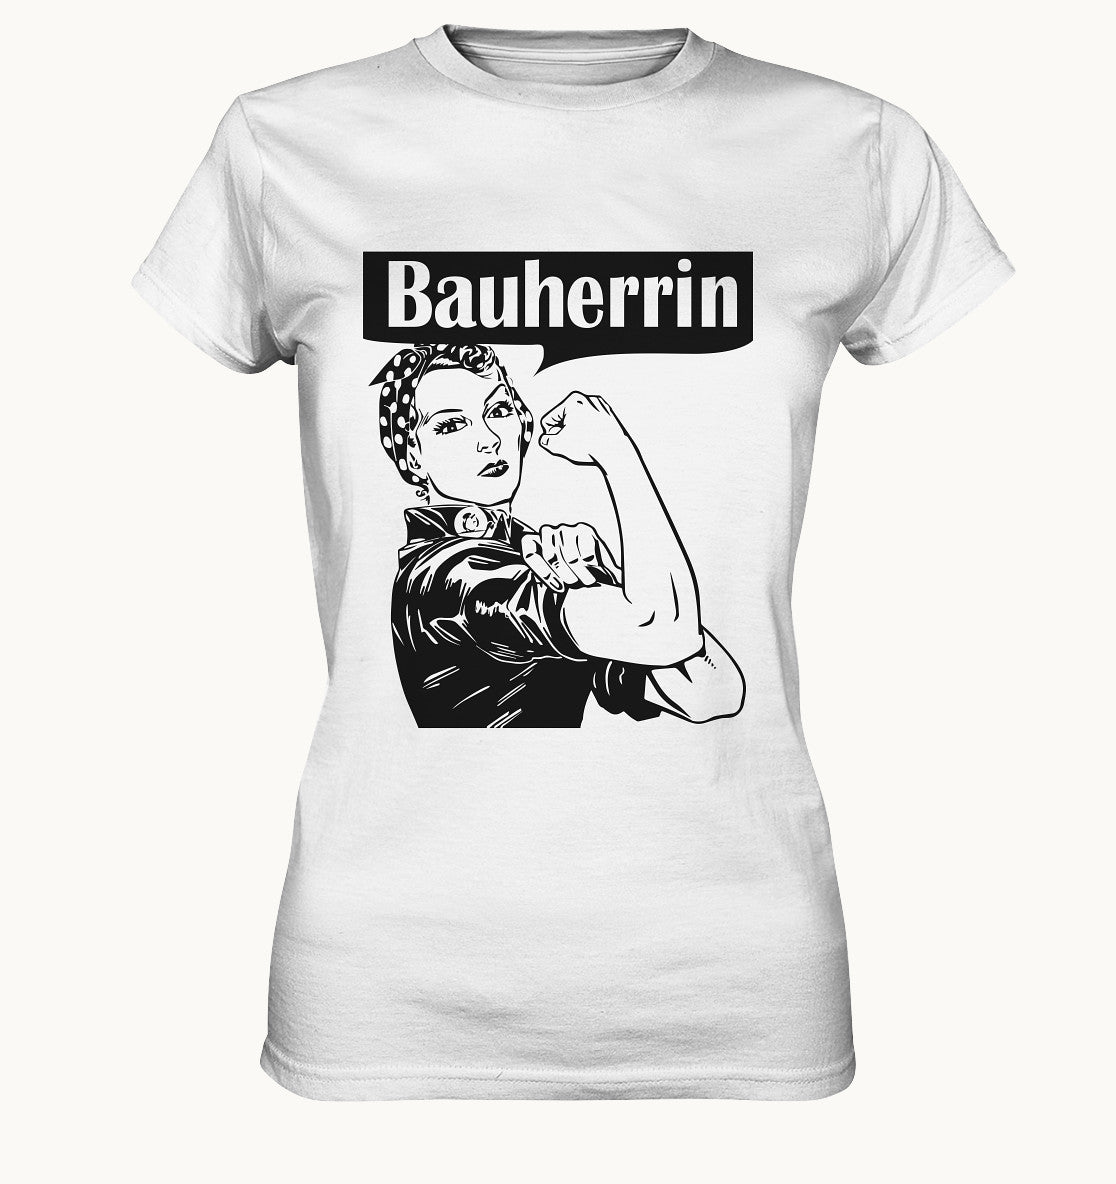 Bauherrin - Retro - Ladies Premium Shirt